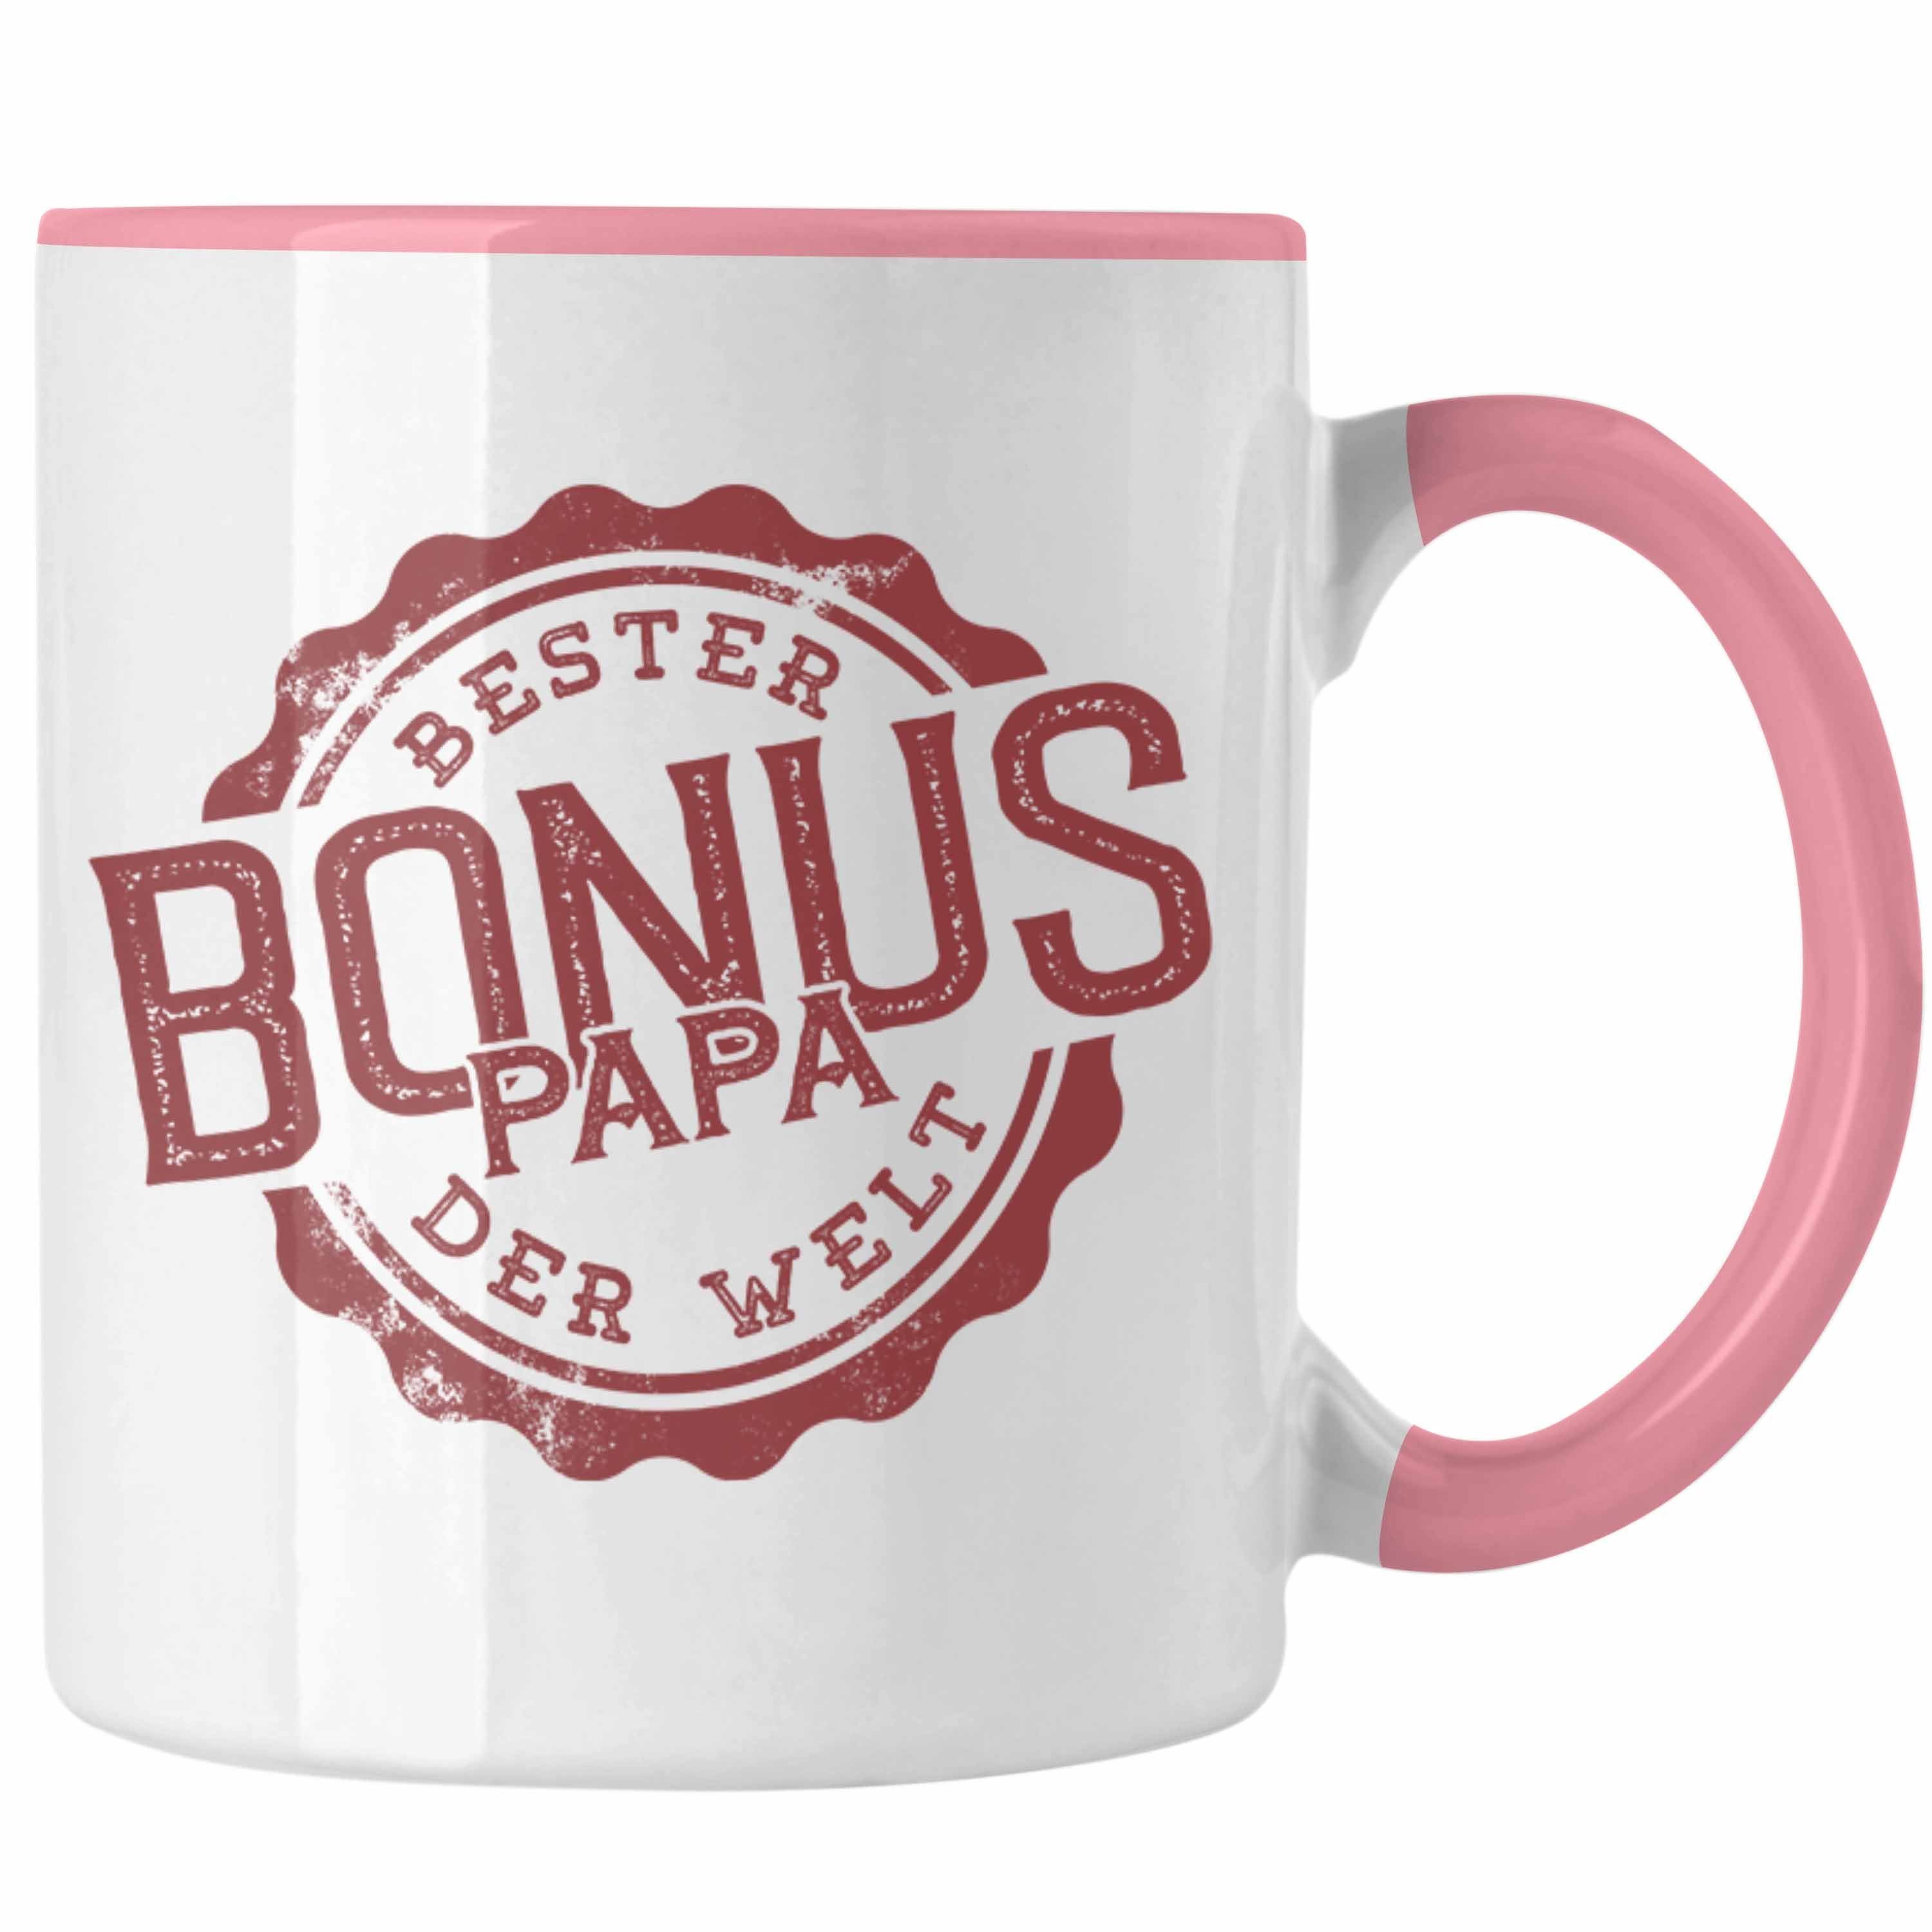 Papa Ges Bester Tasse für Der Bonus Welt Geschenkidee Trendation Rosa Spüche Stiefpapa Tasse